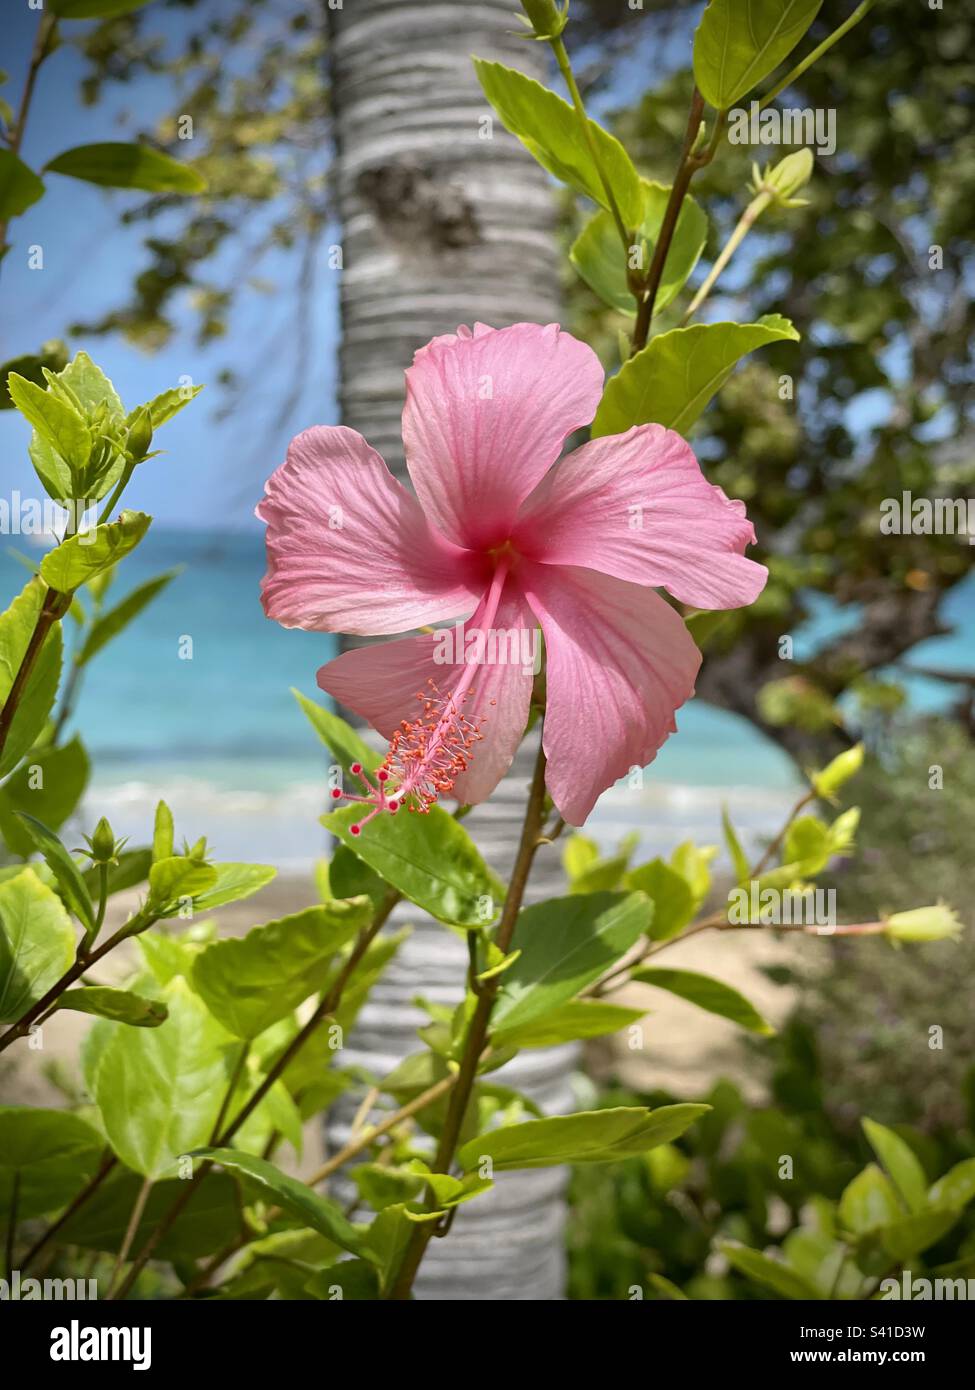 Planta del caribe fotografías e imágenes de alta resolución - Alamy